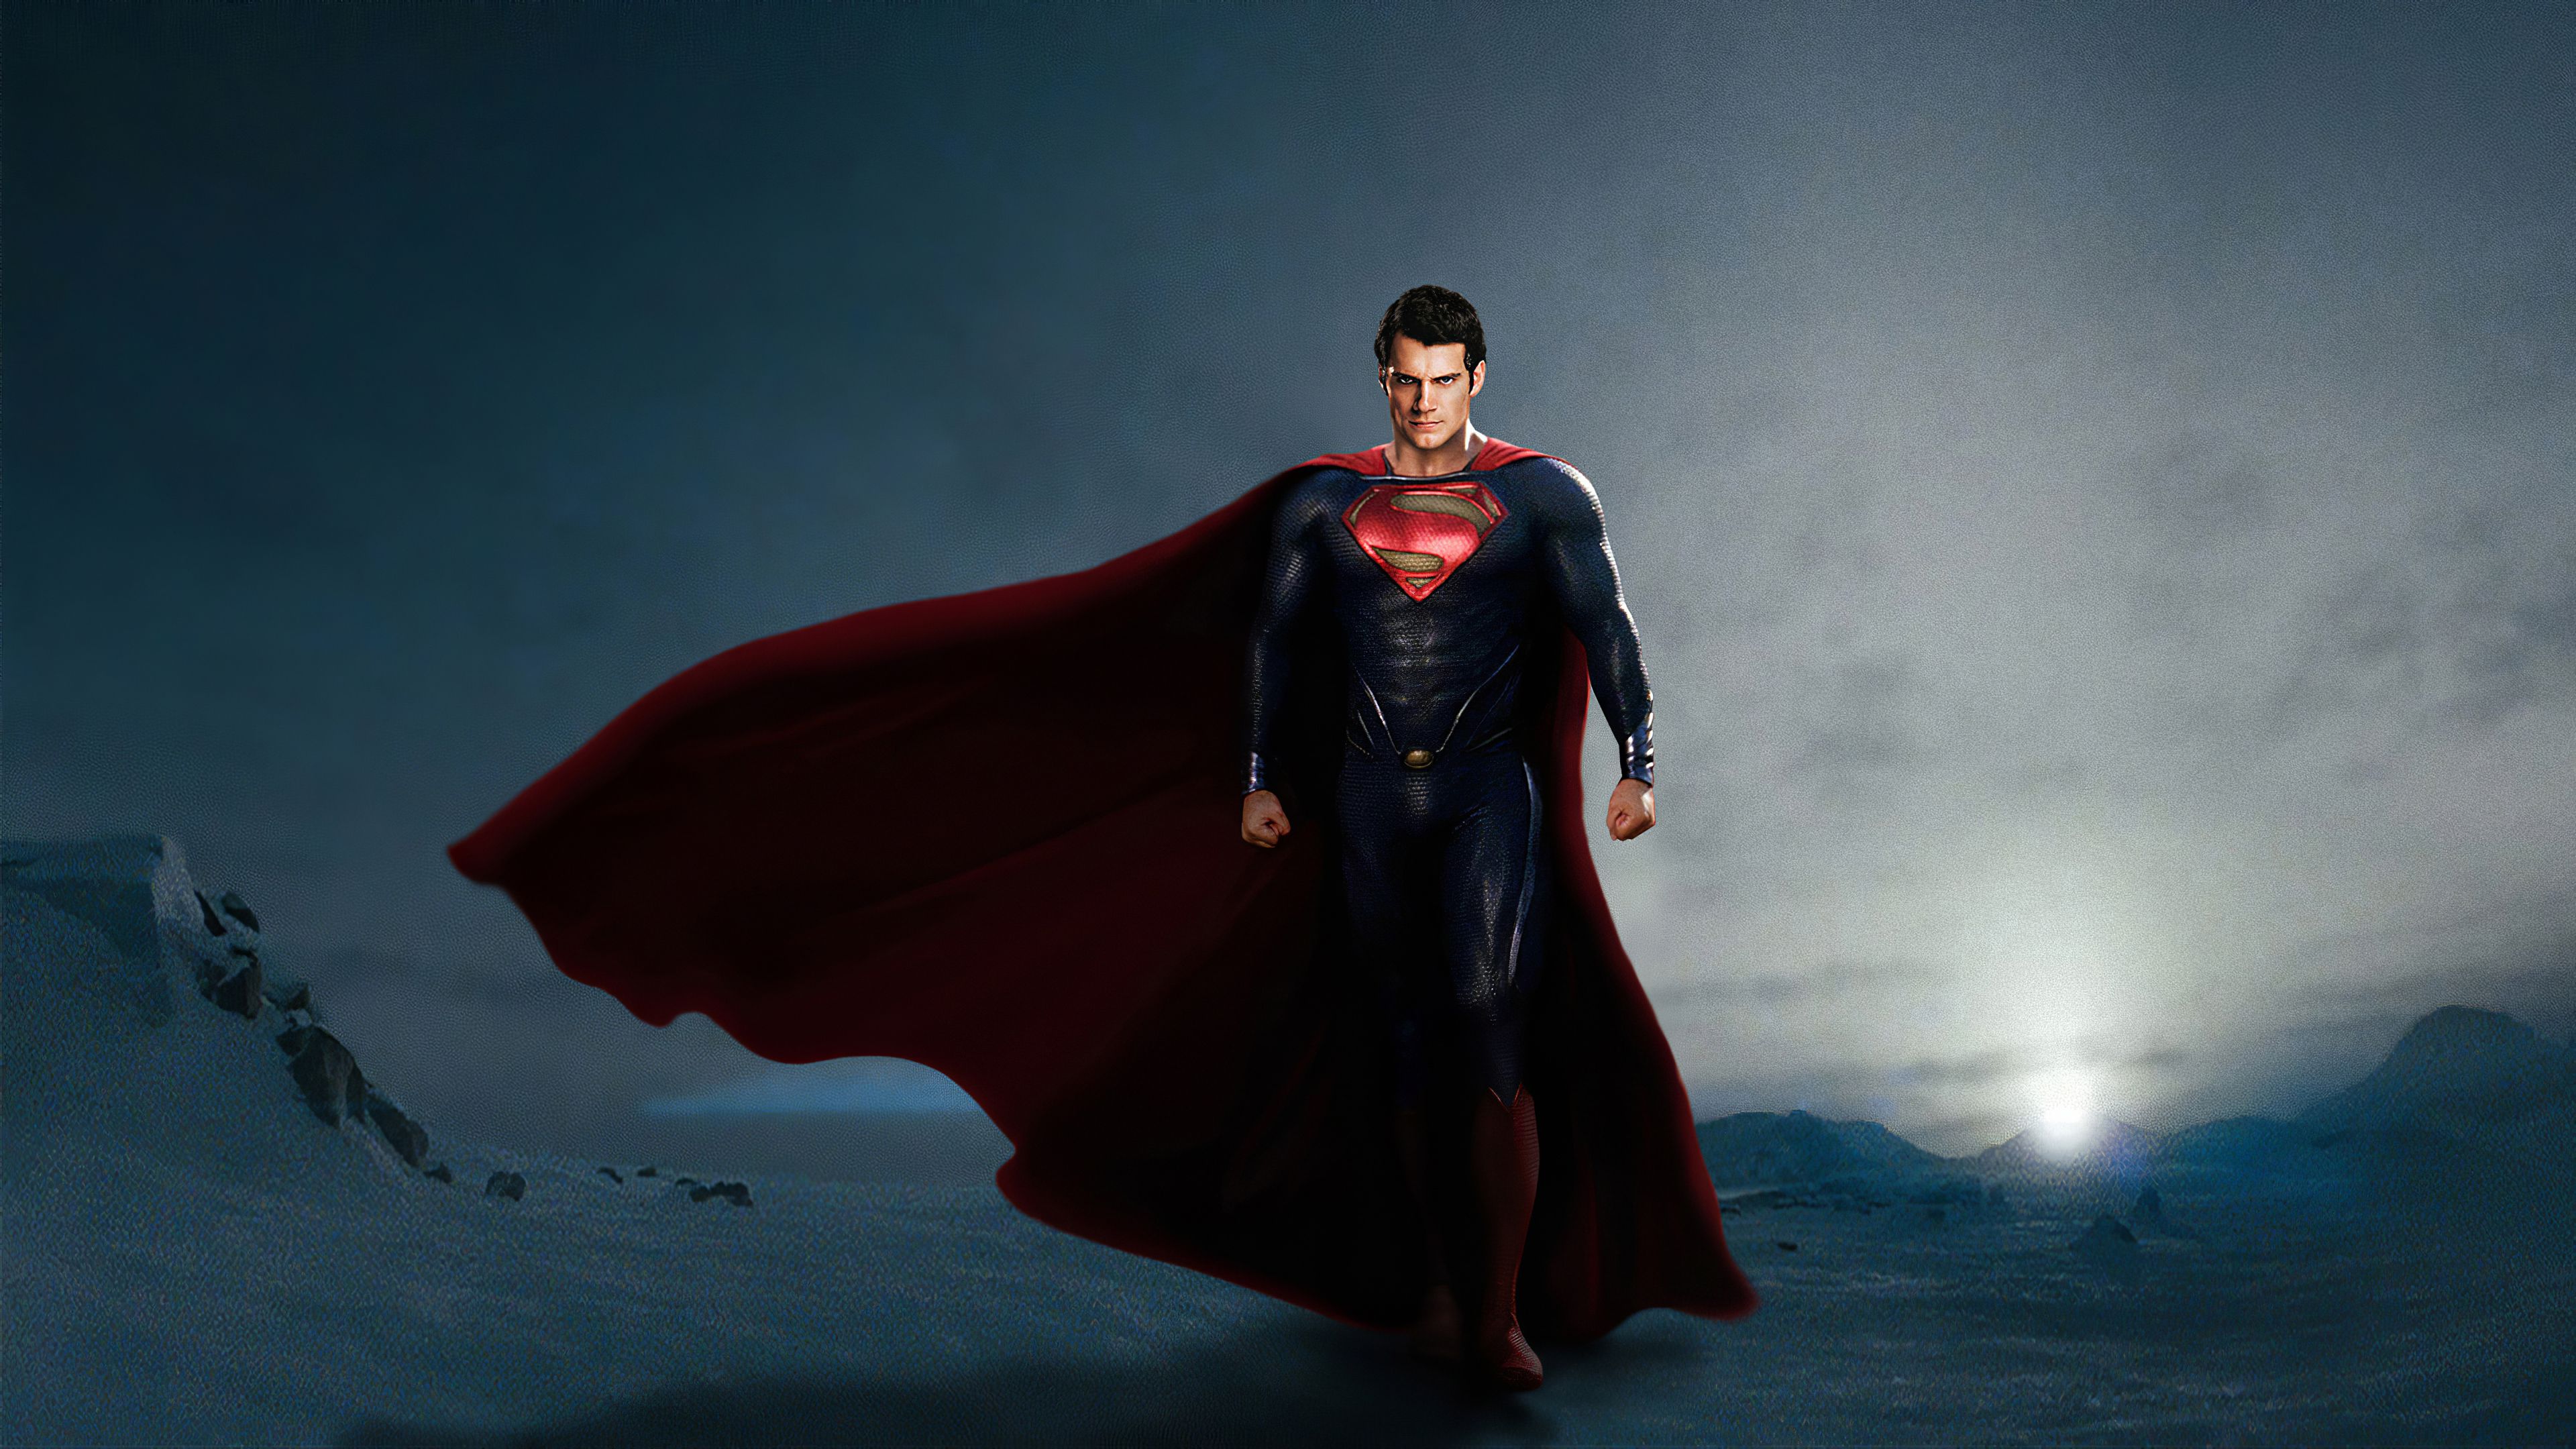 Henry Cavill as Superman Wallpaper 4k Ultra HD